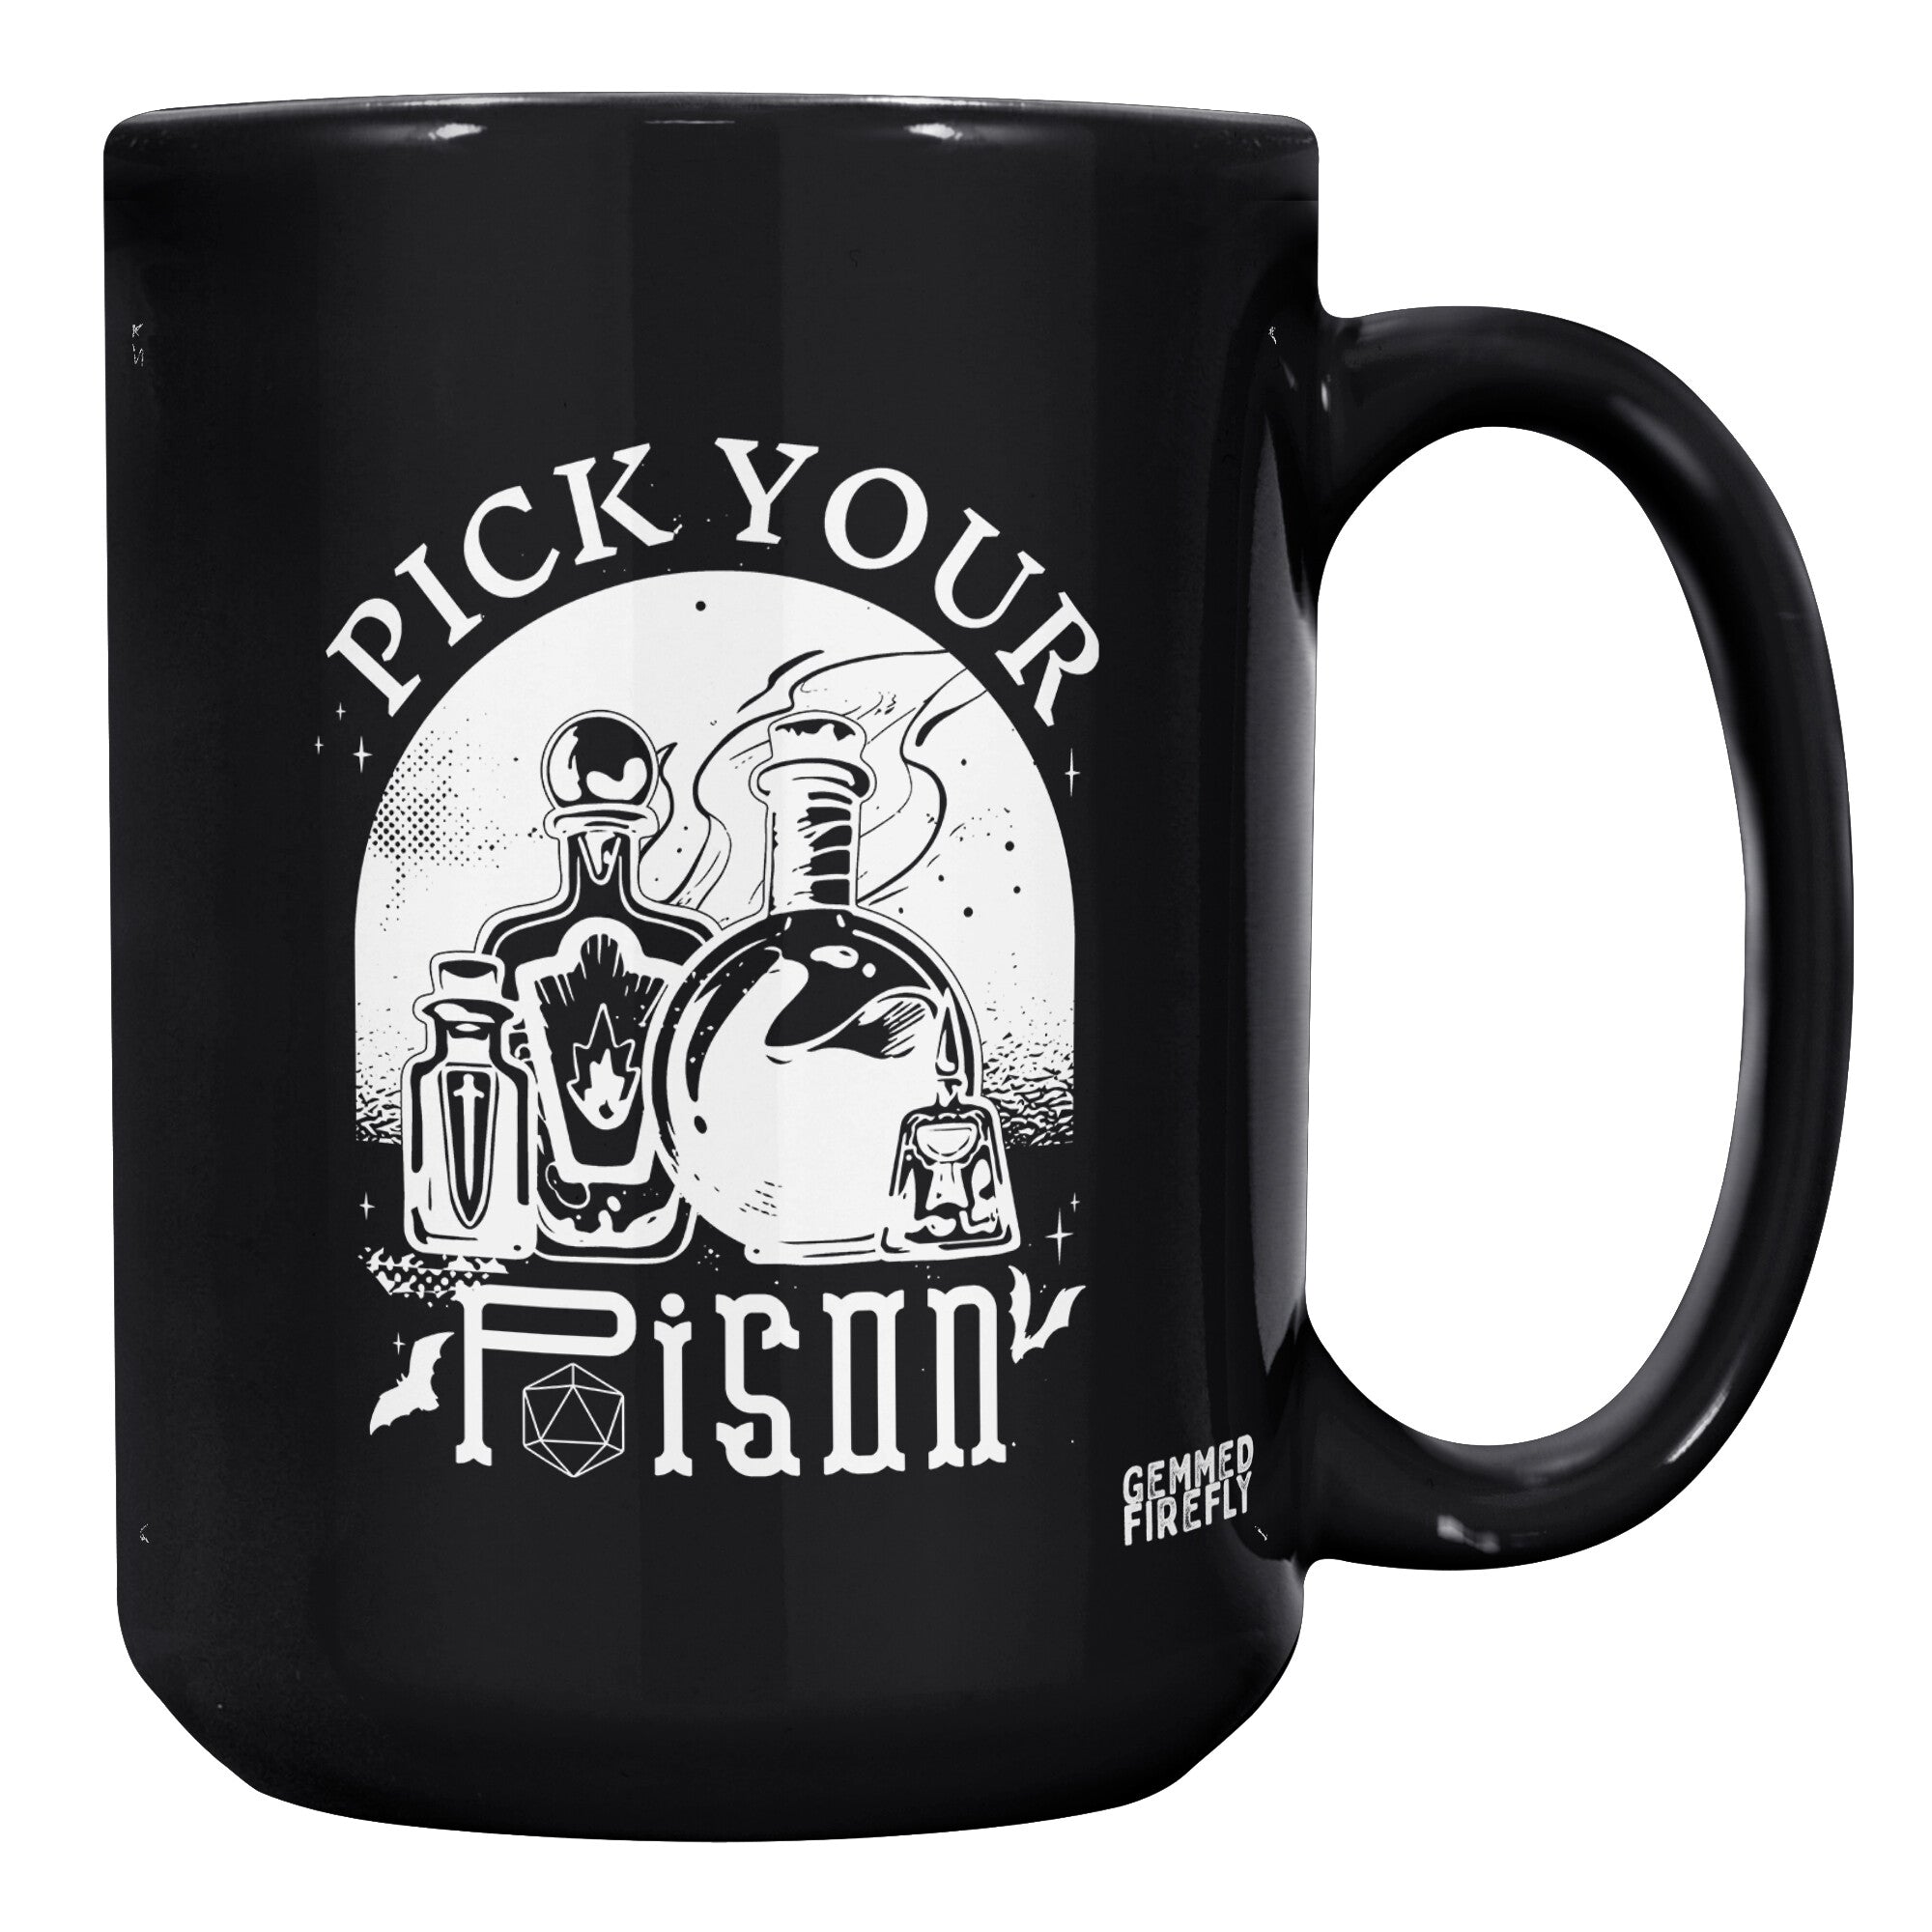 Pick Your Poison D20 Ceramic Mugs  - Gemmed Firefly